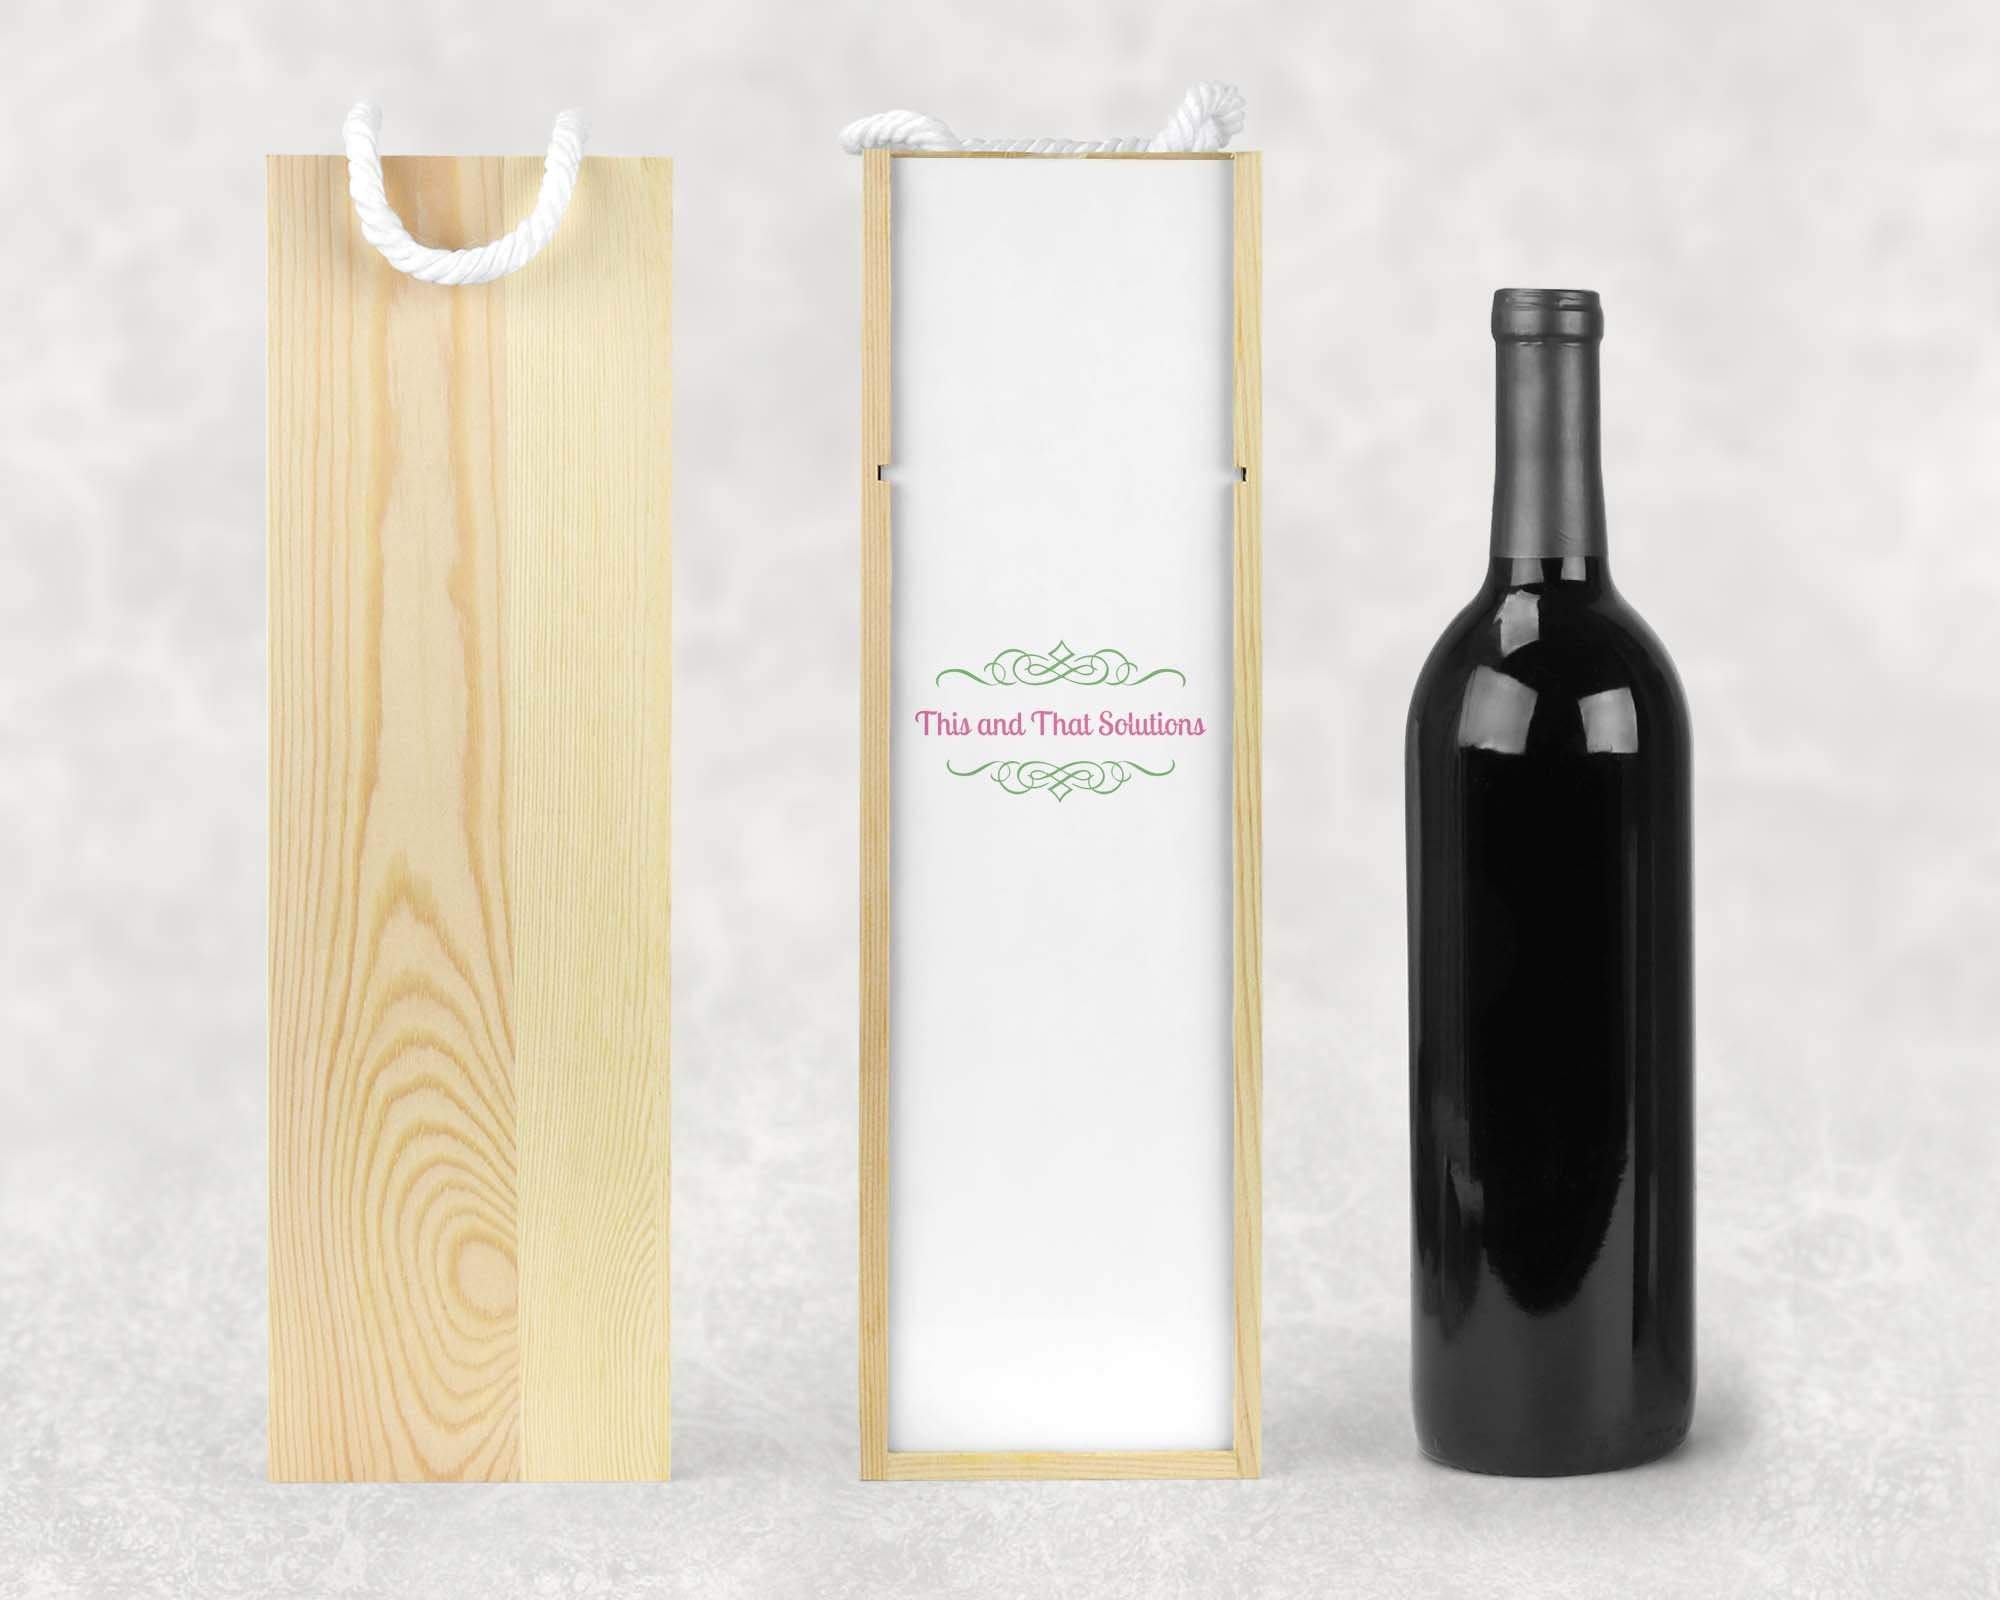 Custom Engraved Wine Bottles & Gifts